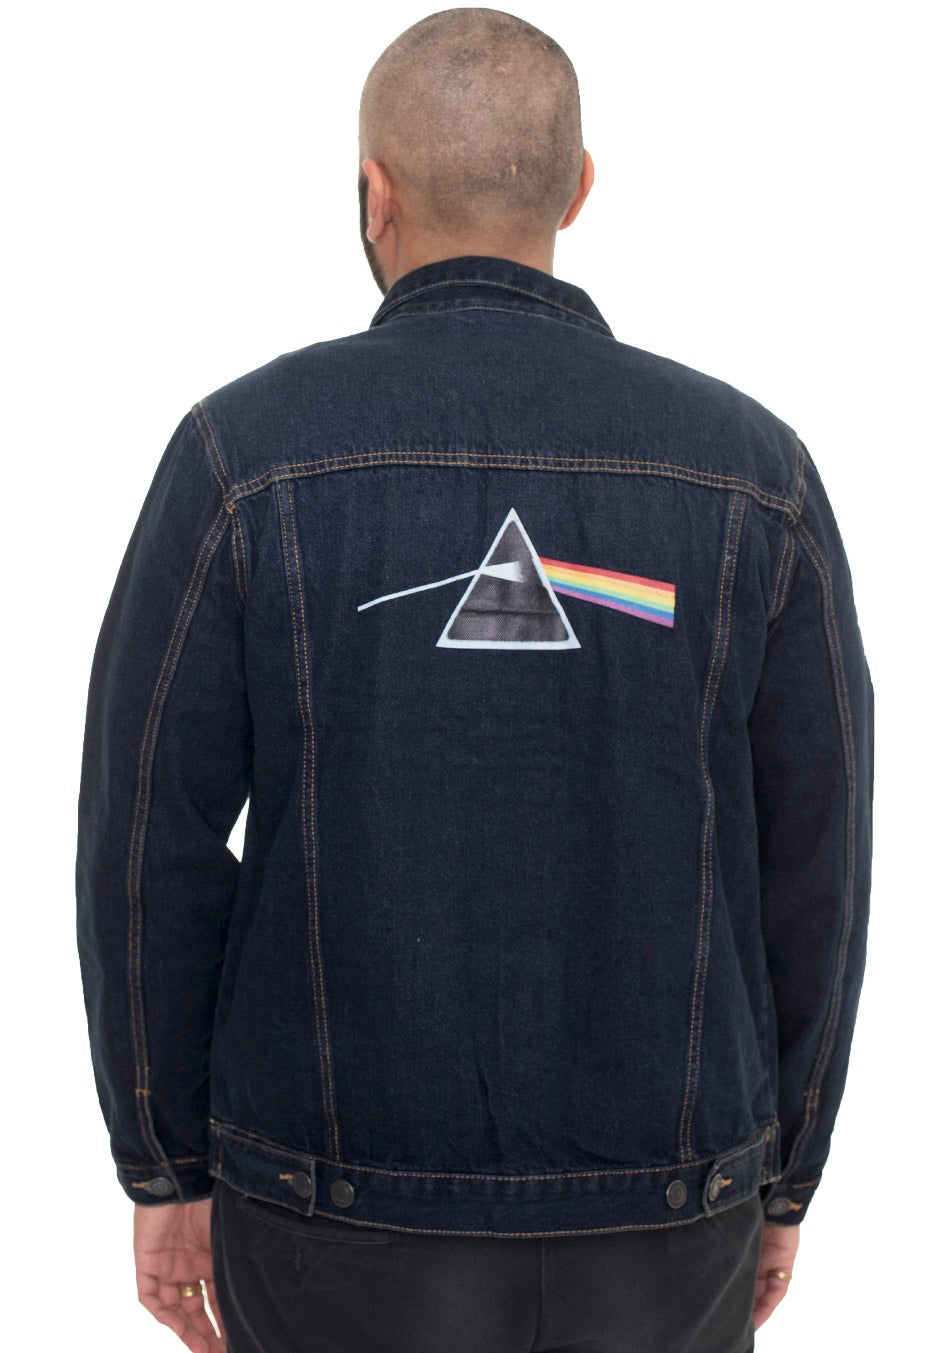 Pink Floyd - DSOTM Prism - Jeans Jacket